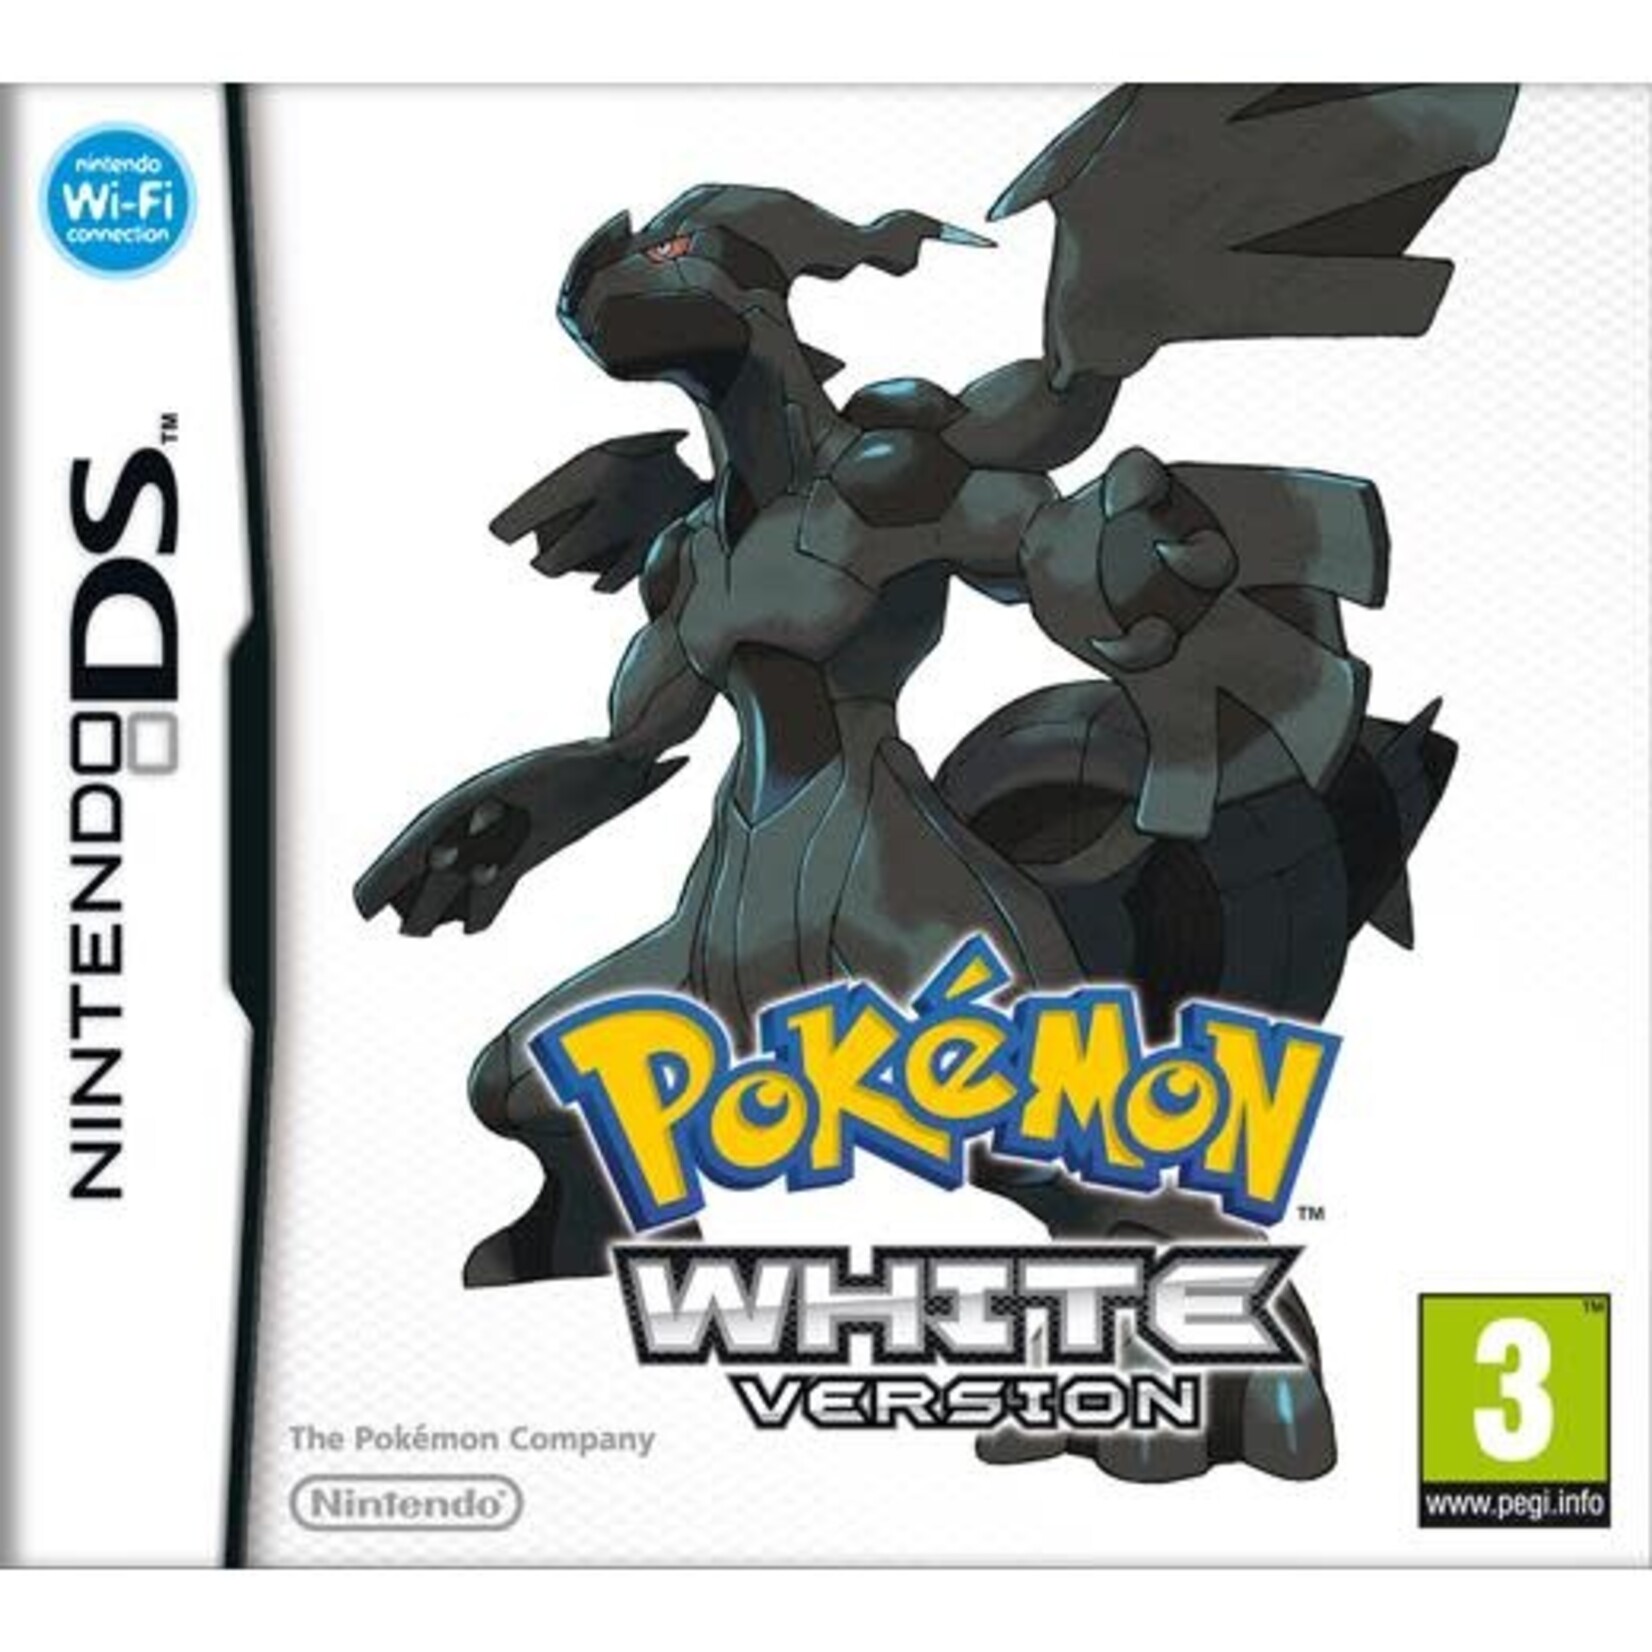 Pokémon Pokemon white